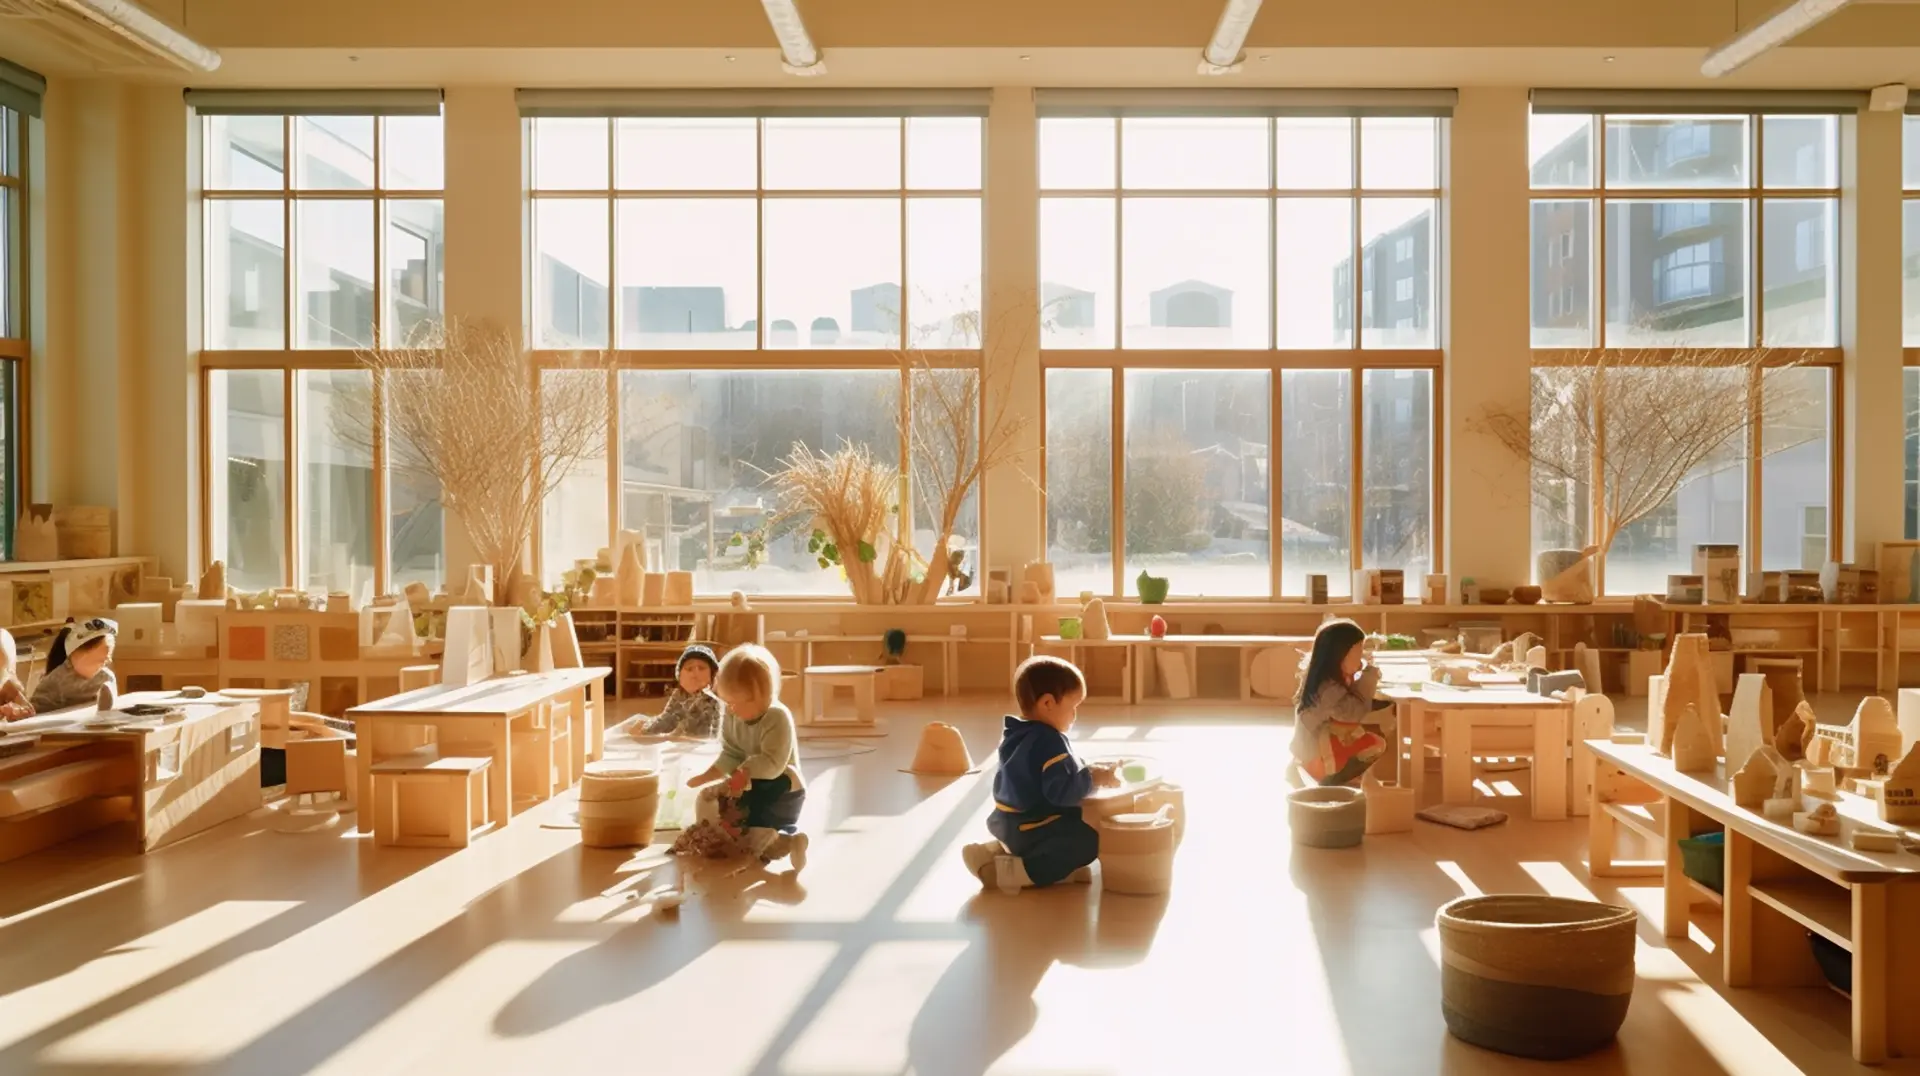 Les enfants participent à une activité Montessori dans une salle meublée de tables et de chaises en bois.